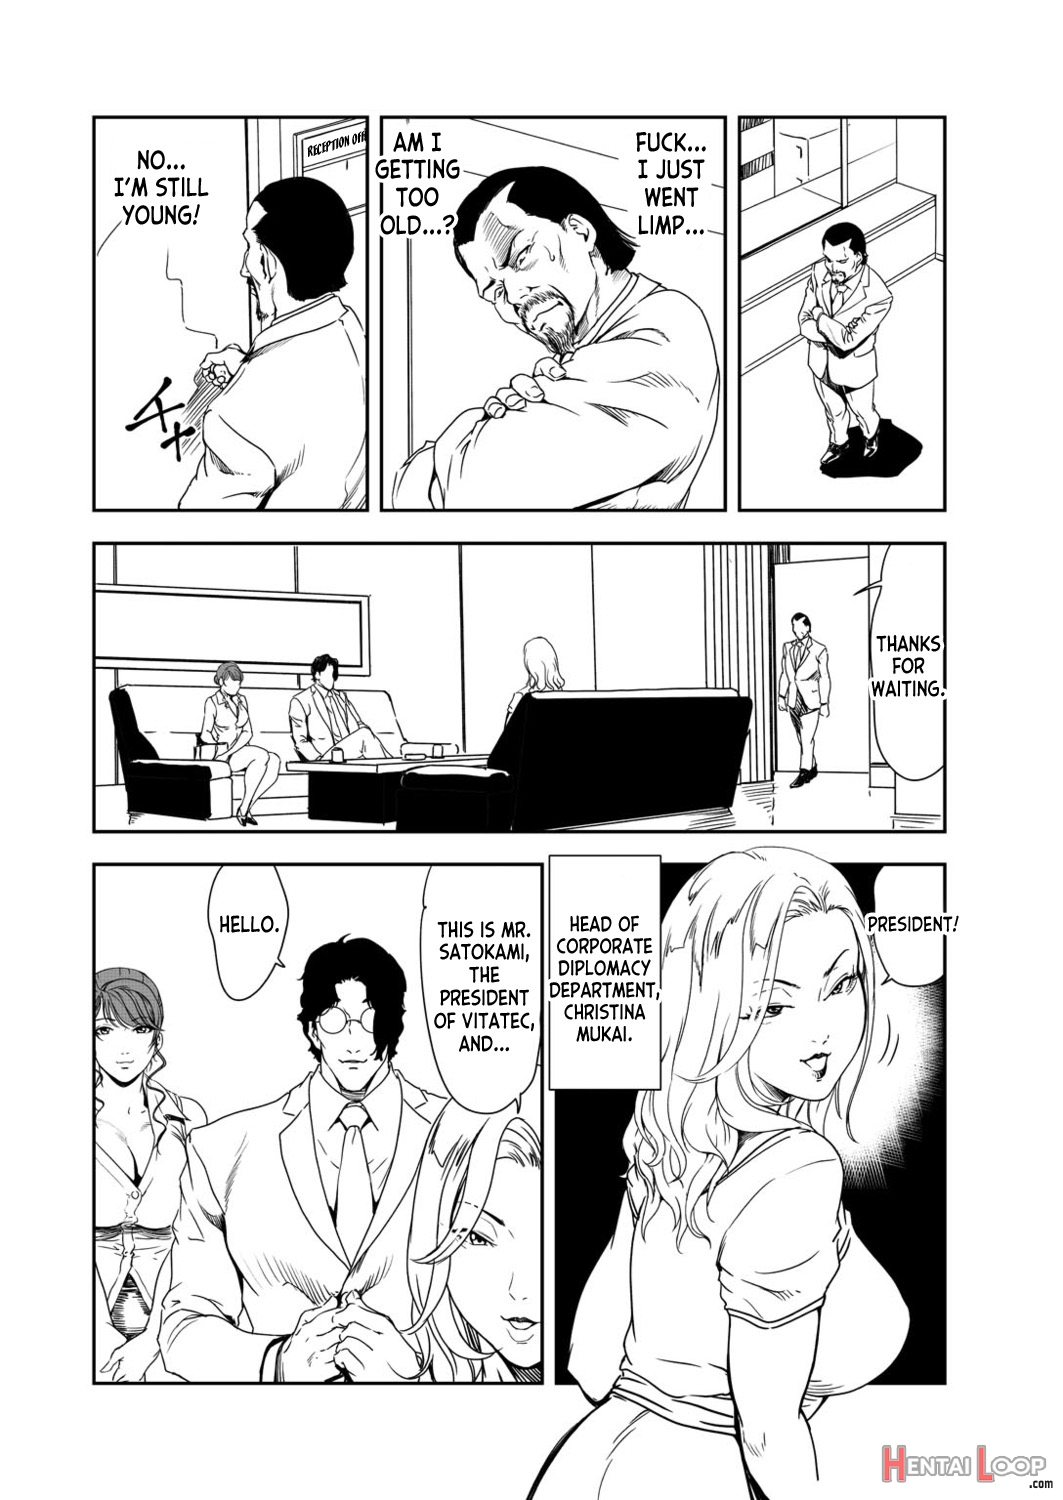 Nikuhisyo Yukiko 39 page 6